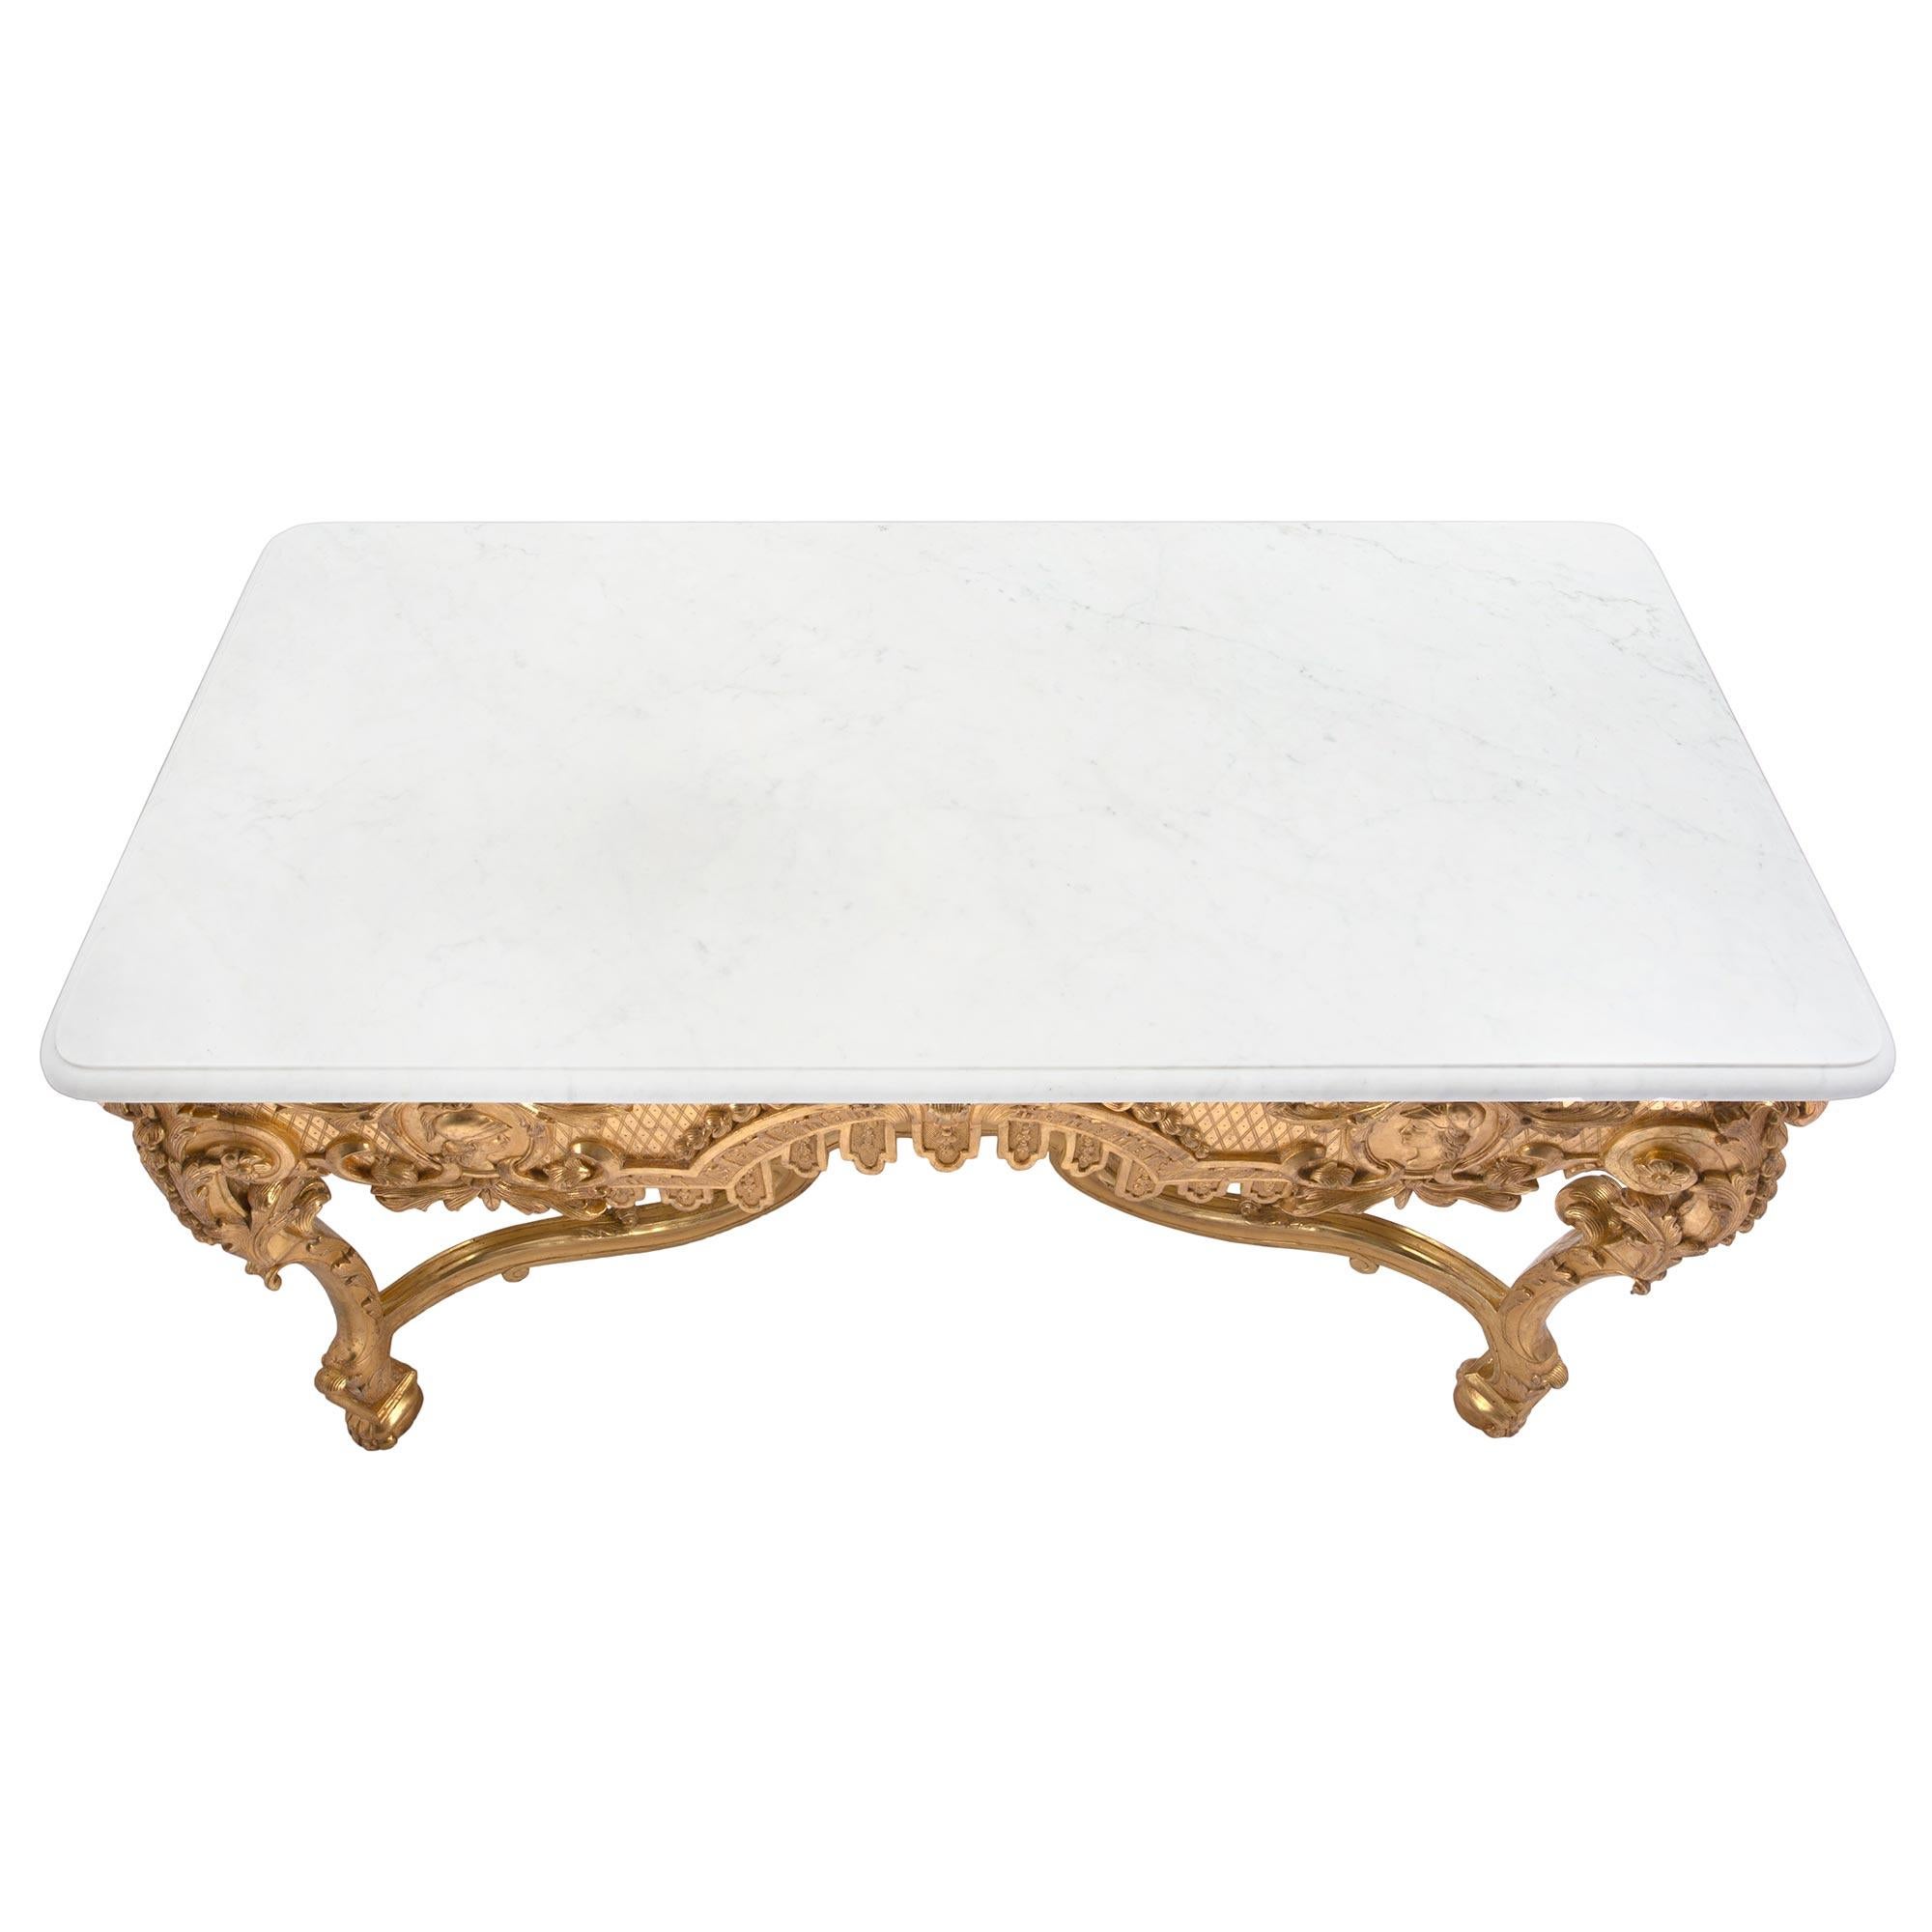 Eine atemberaubende Französisch 19. Jahrhundert Régence st. Vergoldung und weißem Carrara-Marmor rechteckigen Mitteltisch. Der Tisch steht auf hübschen Tatzenfüßen unter beeindruckenden Cabriole-Beinen, die mit reich geschnitzten Blattwerken